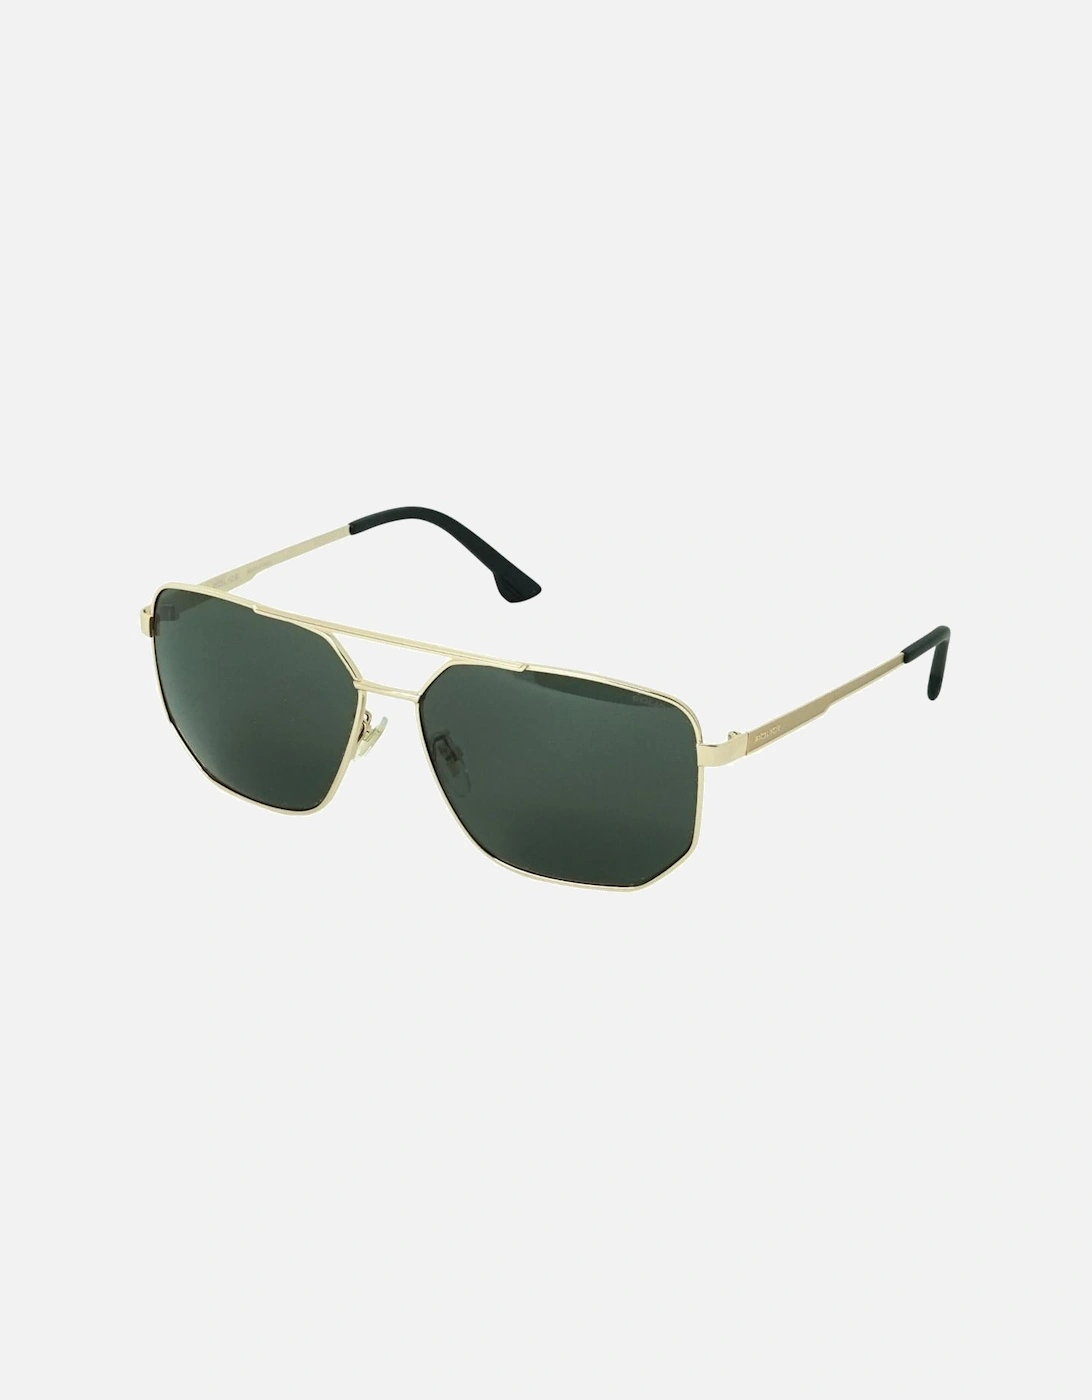 SPLB36M 300G Gold Sunglasses